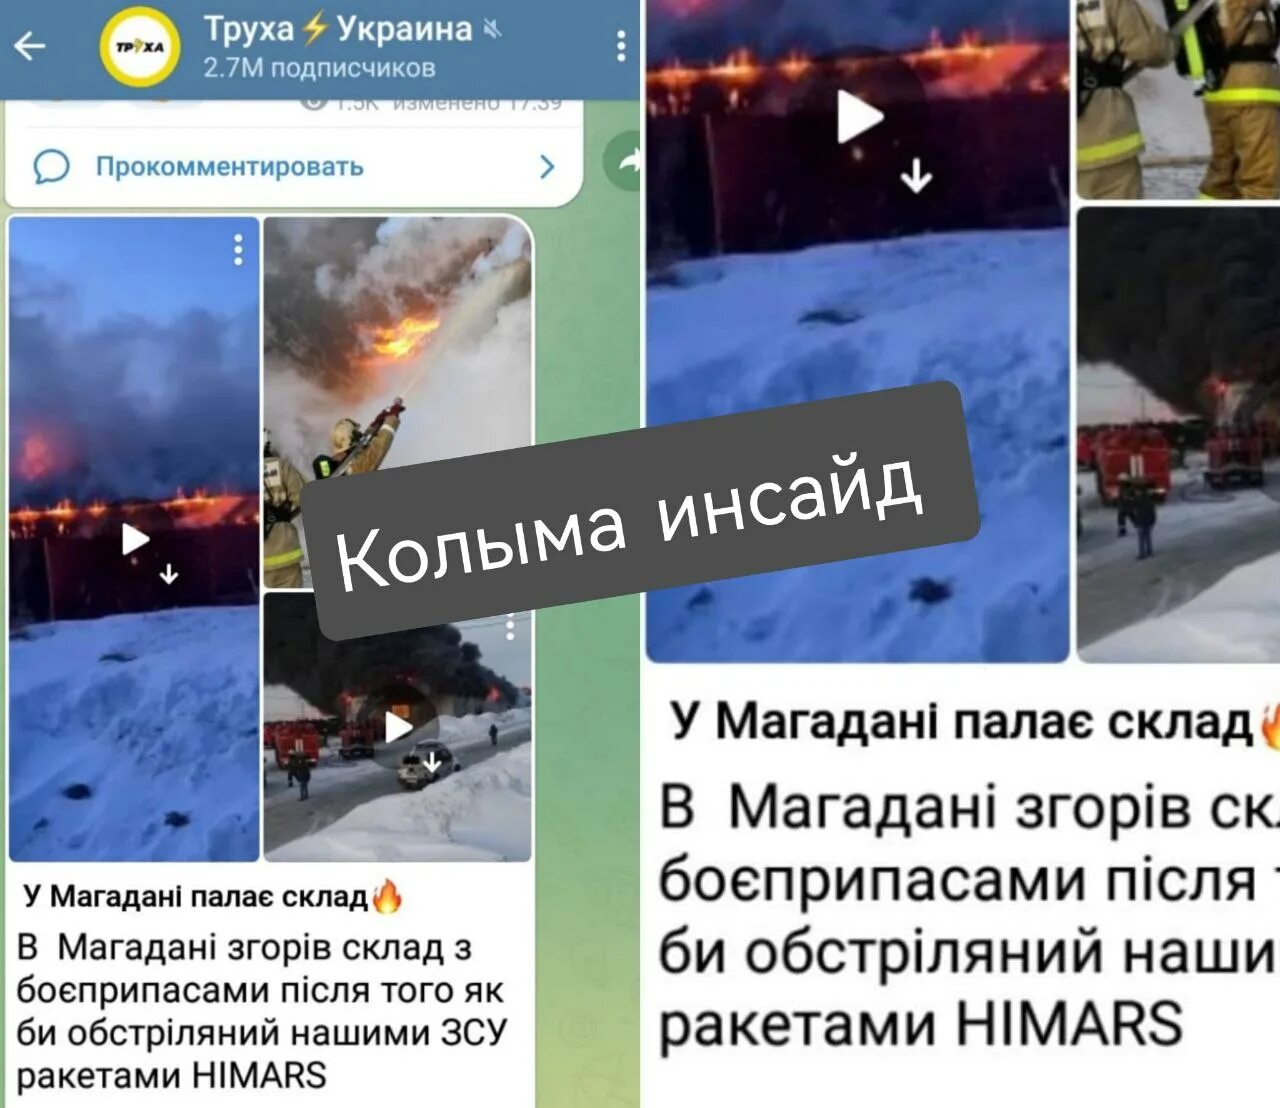 Сколько хаймерсов на украине сегодня. Разбитые хаймерсы на Украине. ХАЙМЕРС сколько уничтожено. ХАЙМЕРС Википедия.